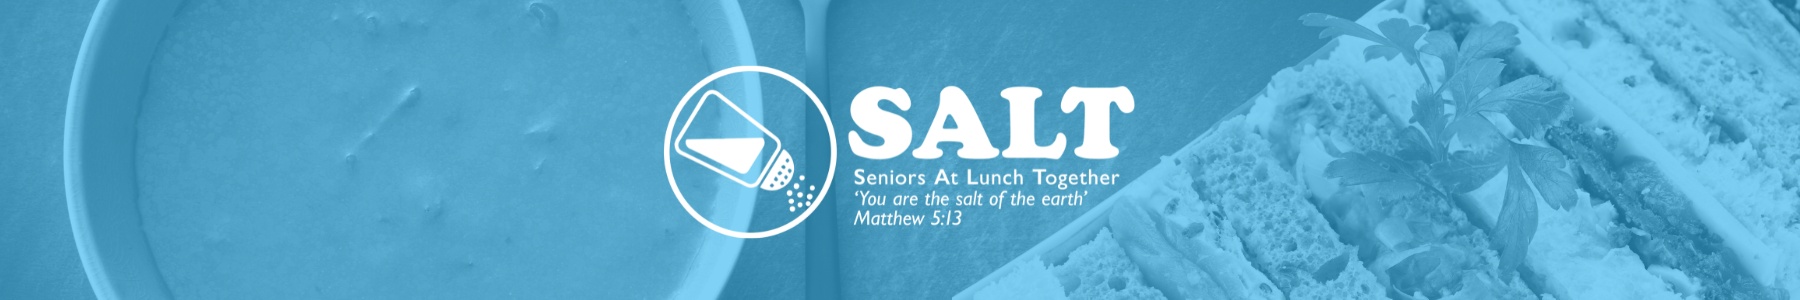 Seniors At Lunch Together SALT Banner